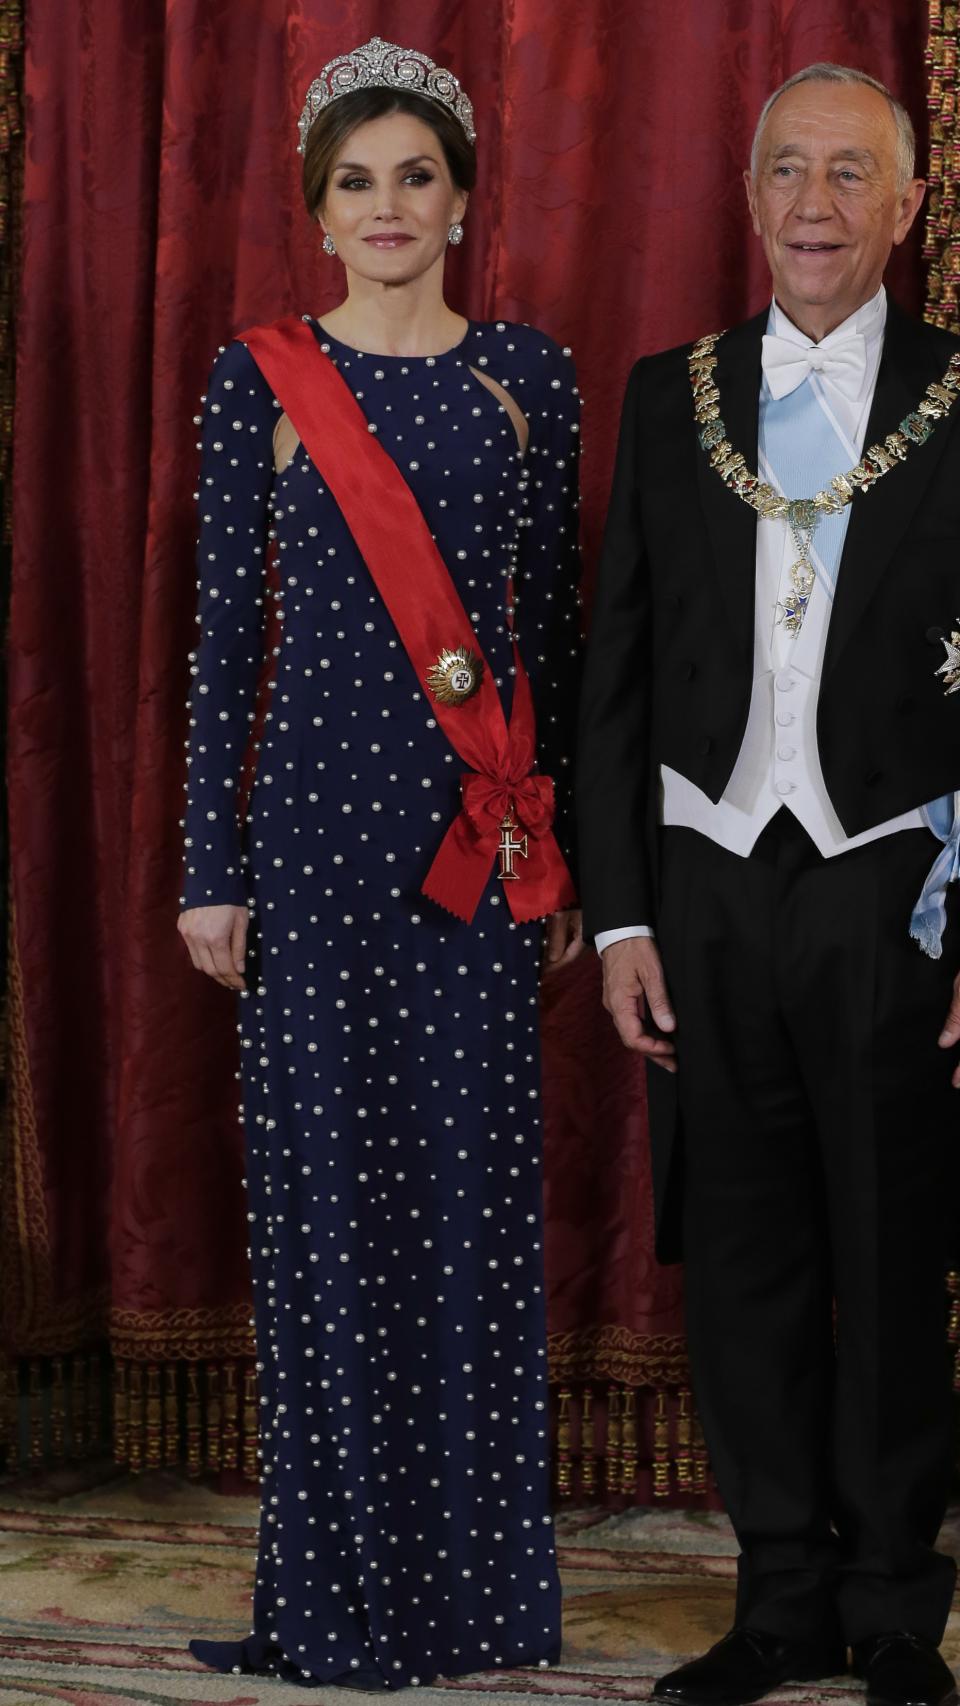 La única vez que Letizia lució un vestido de Ana Locking fue en cena de gala en honor al presidente de Portugal Marcelo Rebelo de Sousa.